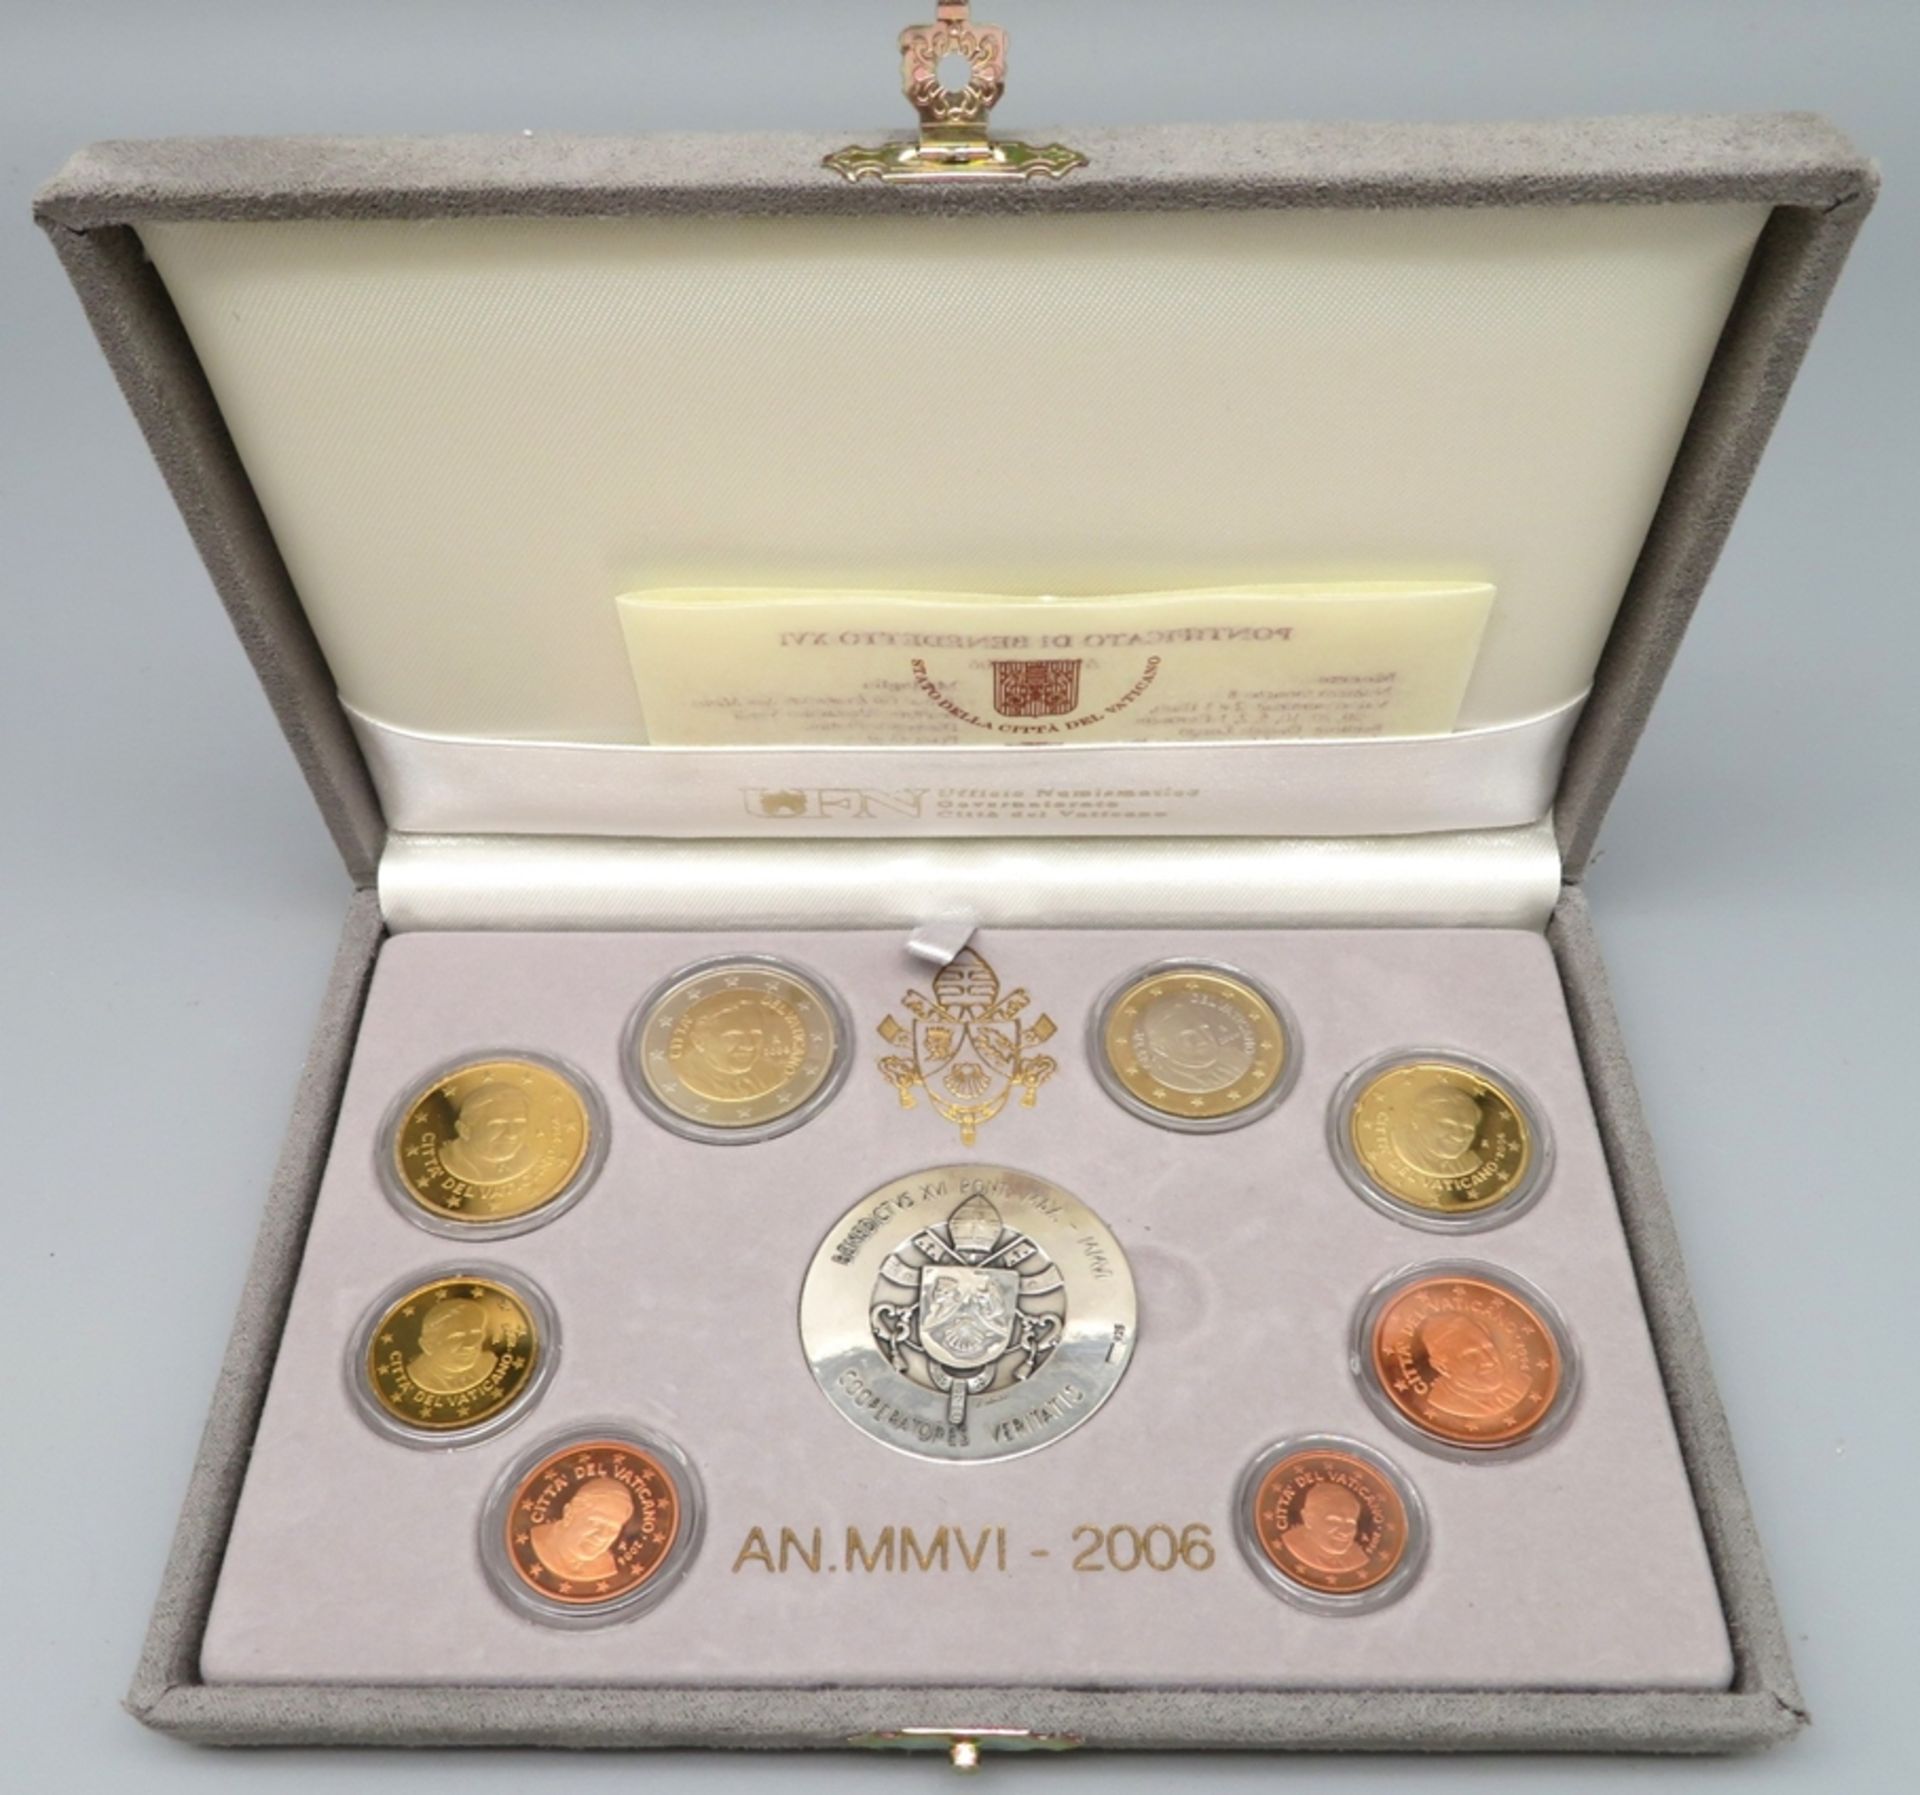 2 Euro-Münzsätze, Johannes Paul II./Benedikt XVI., 2003/2006, mit je 2 Medaillen, diese Silber 925/ - Bild 2 aus 2